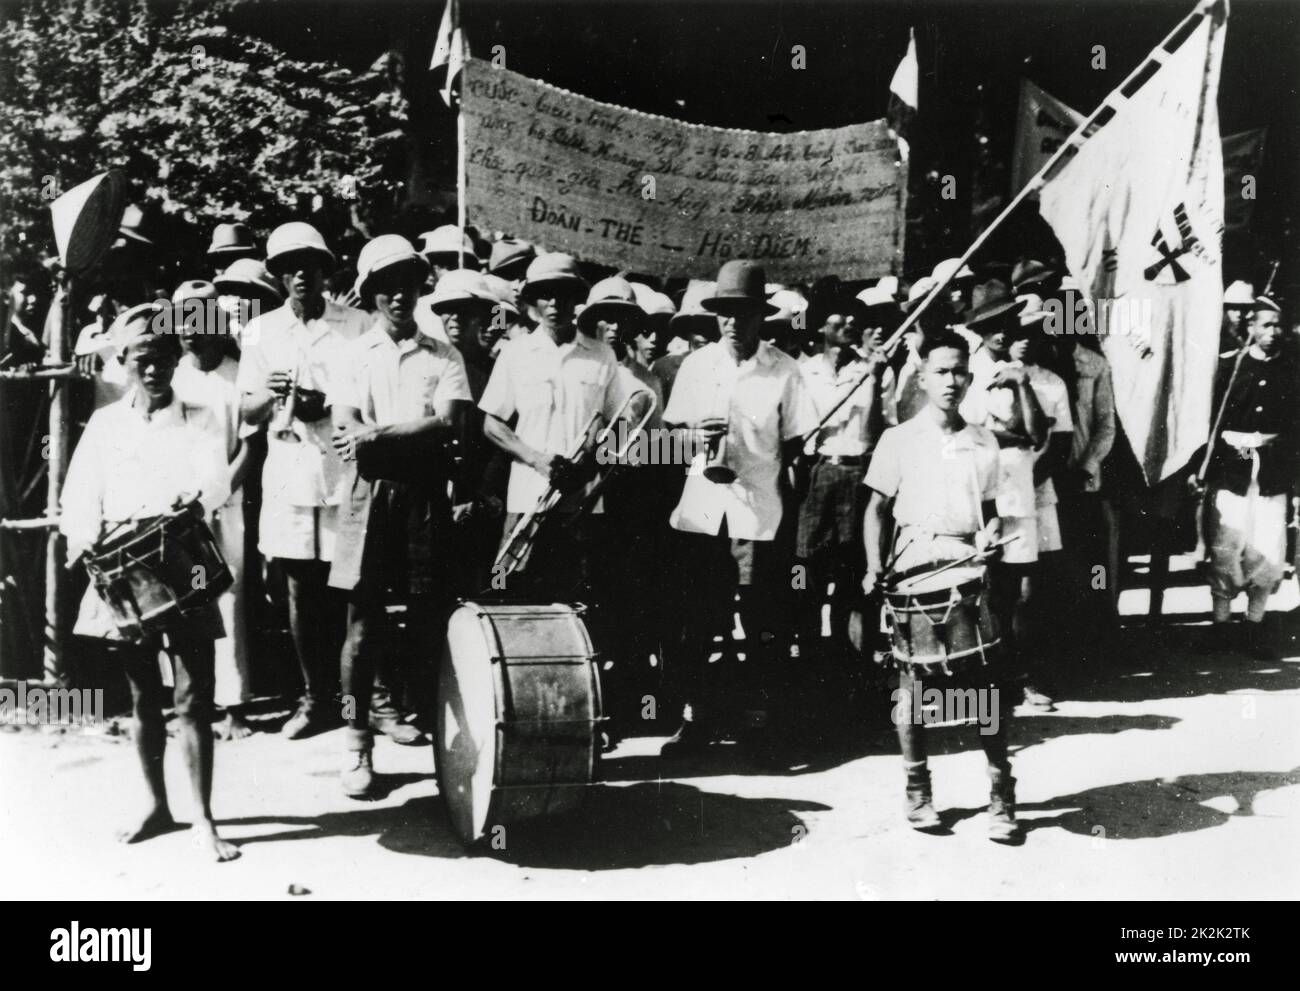 Friedenszeremonien, die von vietnamesischen Menschen während des Indochina-Krieges geführt wurden, der 2 Jahre zuvor begann. 1948 Washington, Library of Congress Stockfoto